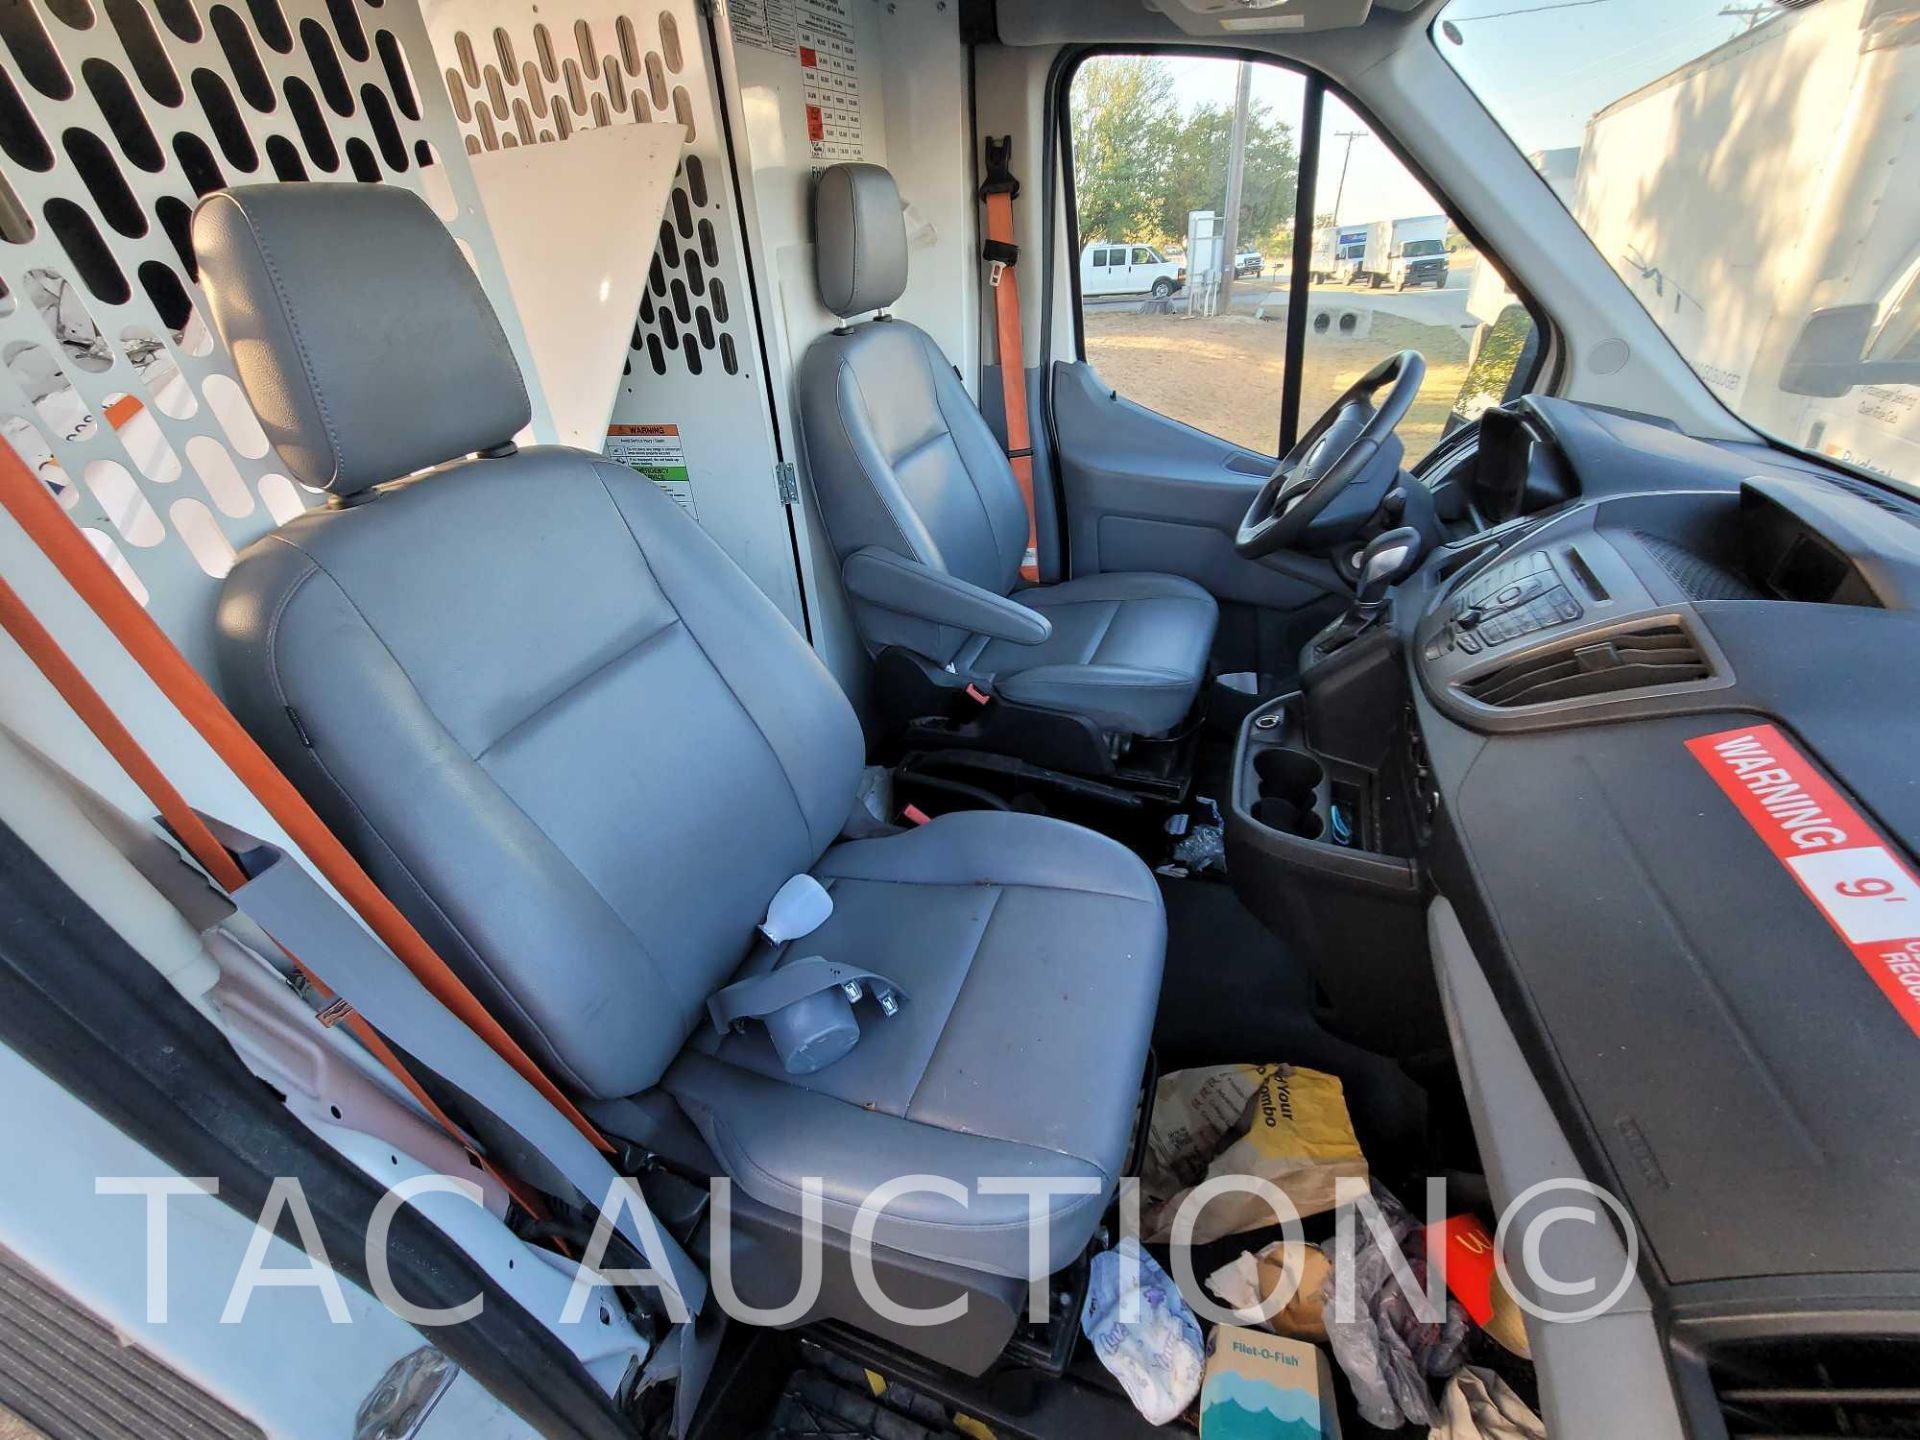 2019 Ford Transit 150 Cargo Van - Image 24 of 40